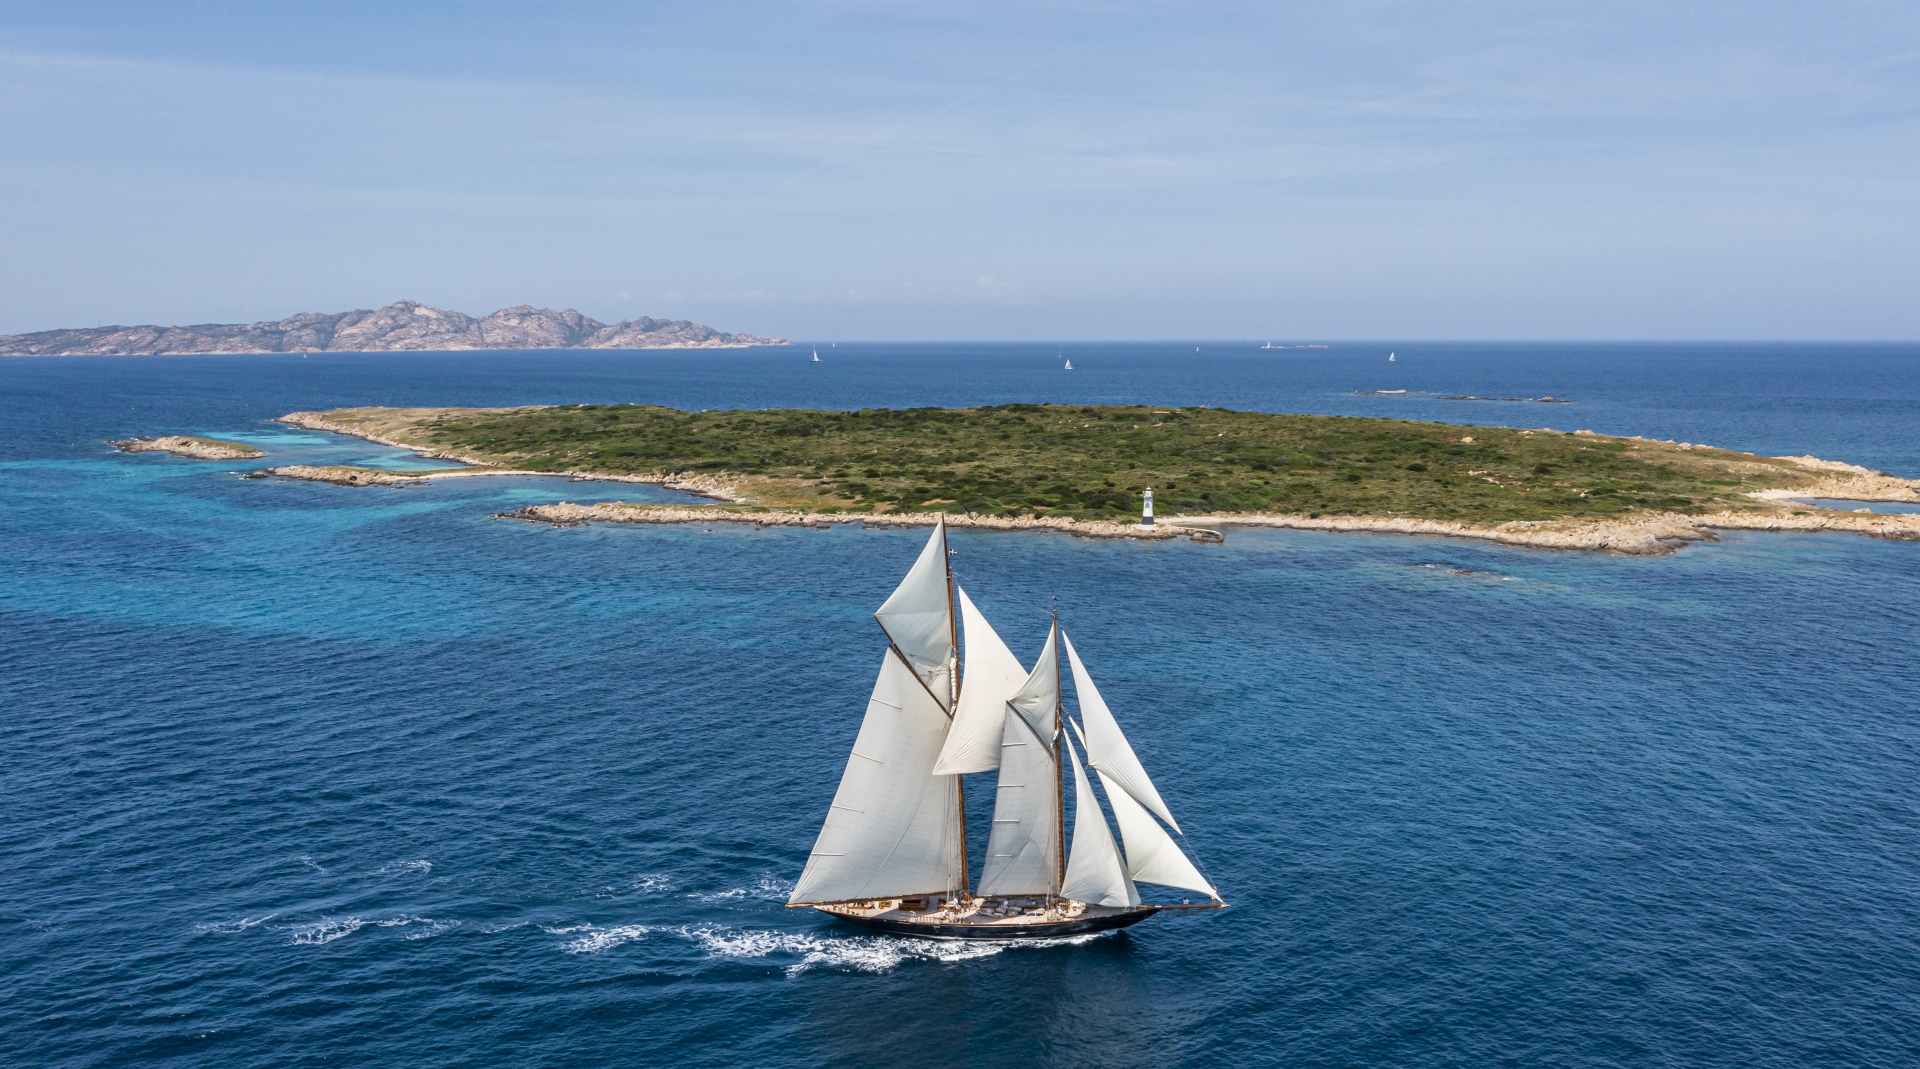 Giorgio Armani Superyacht Regatta, secondo giorno tra le isole dell’Arcipelago di La Maddalena - Comunicati Stampa - Yacht Club Costa Smeralda